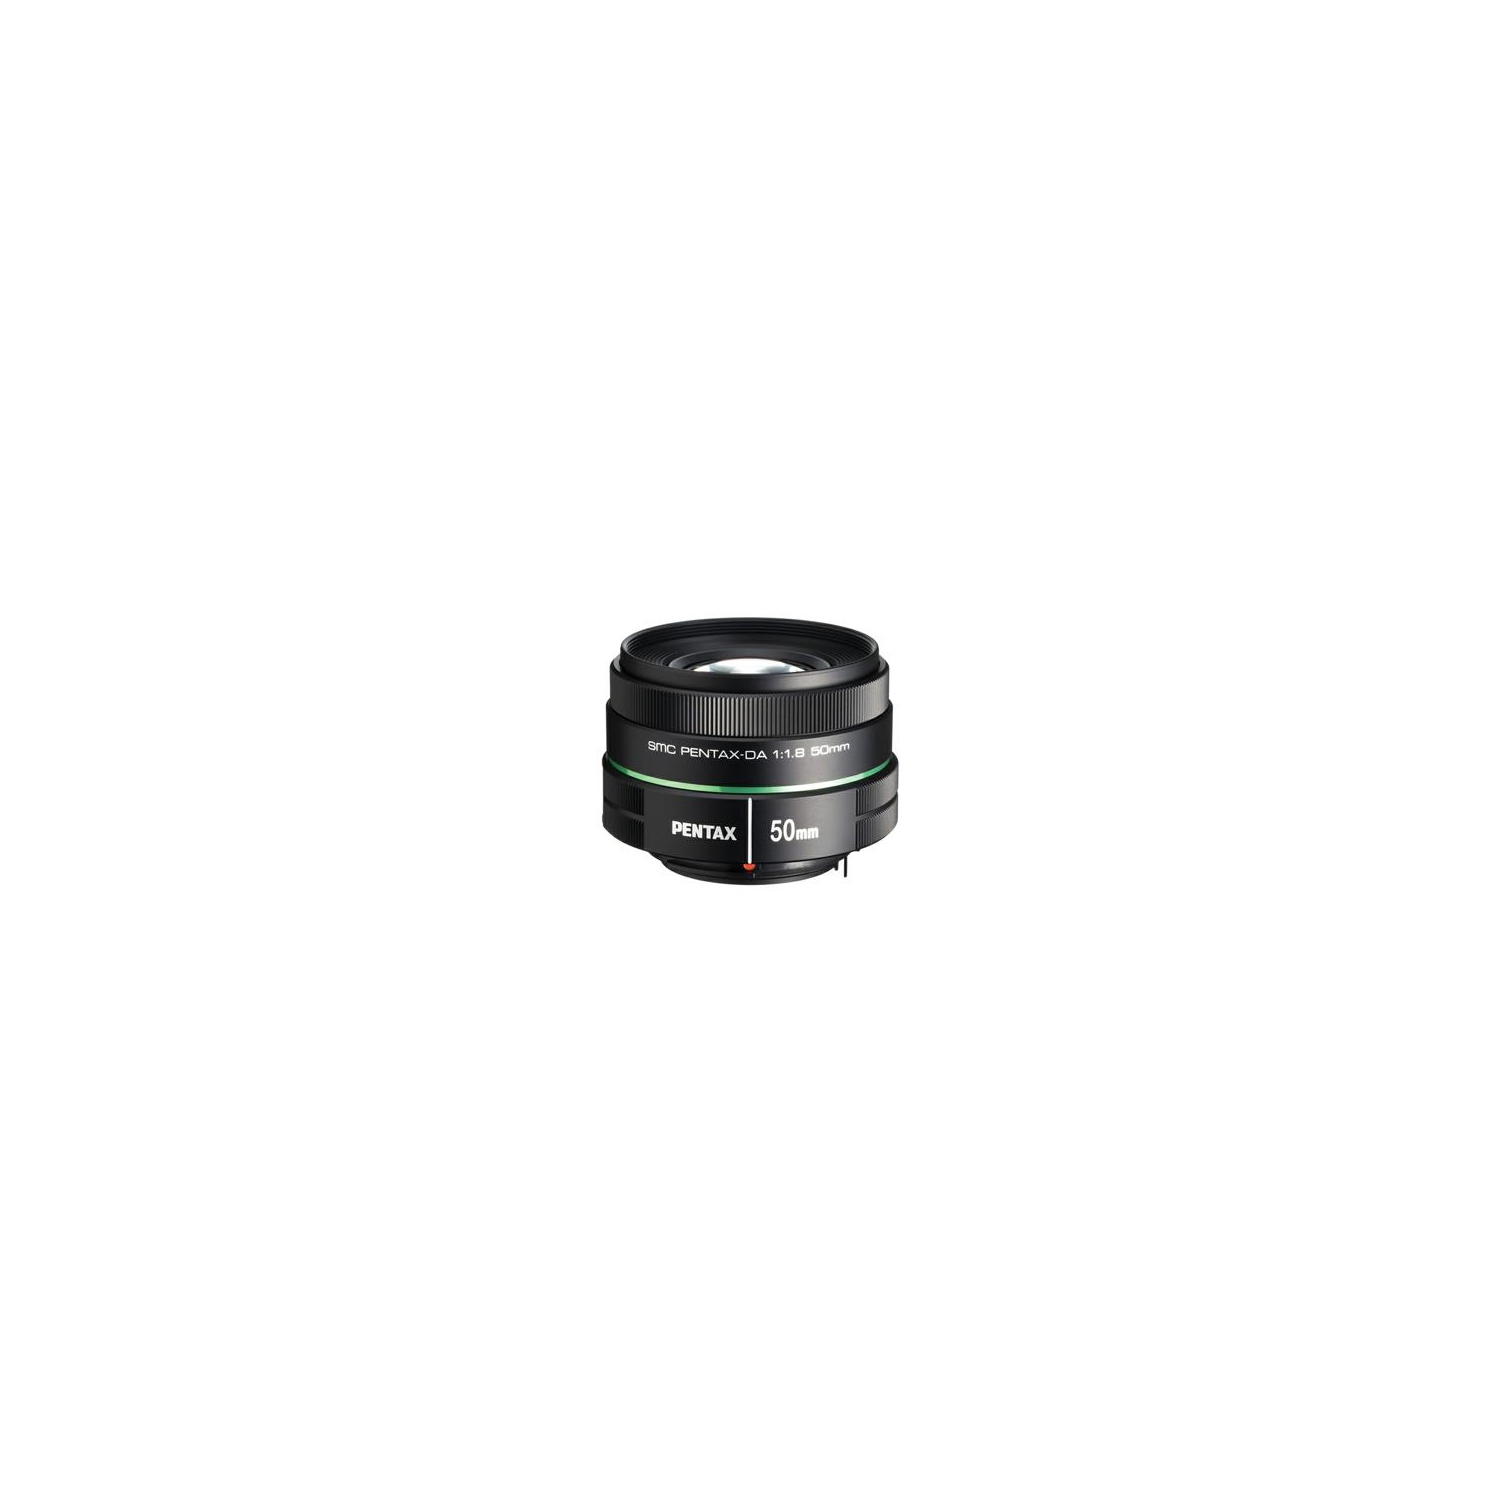 Pentax 50mm f1.8 smc DA Lens | Best Buy Canada